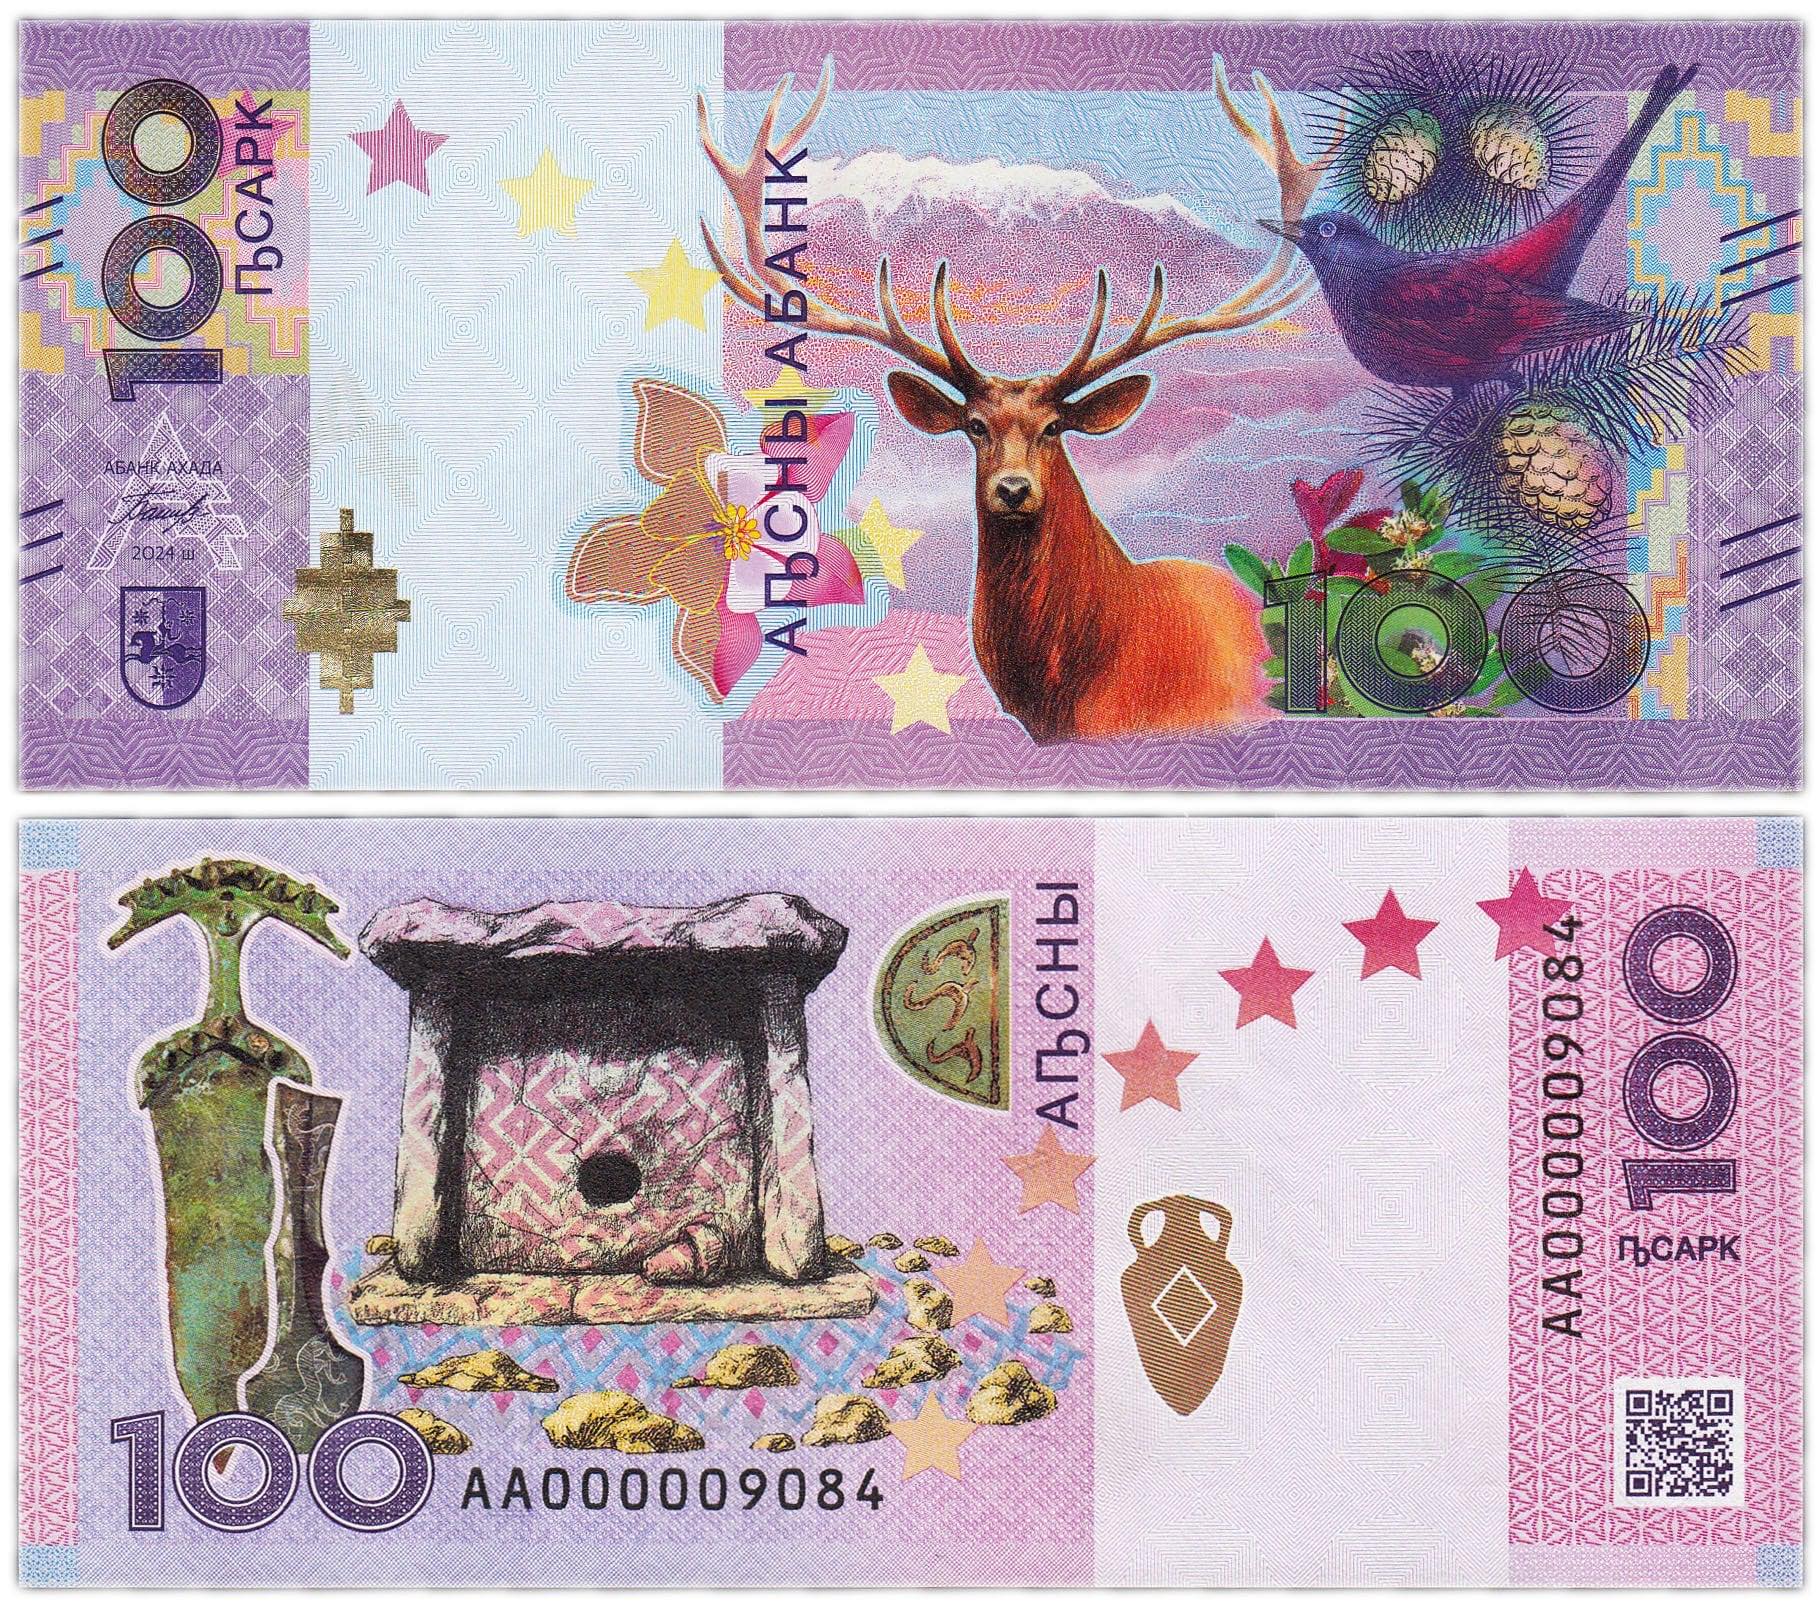 новый купюры абхазской валюты (апсар)